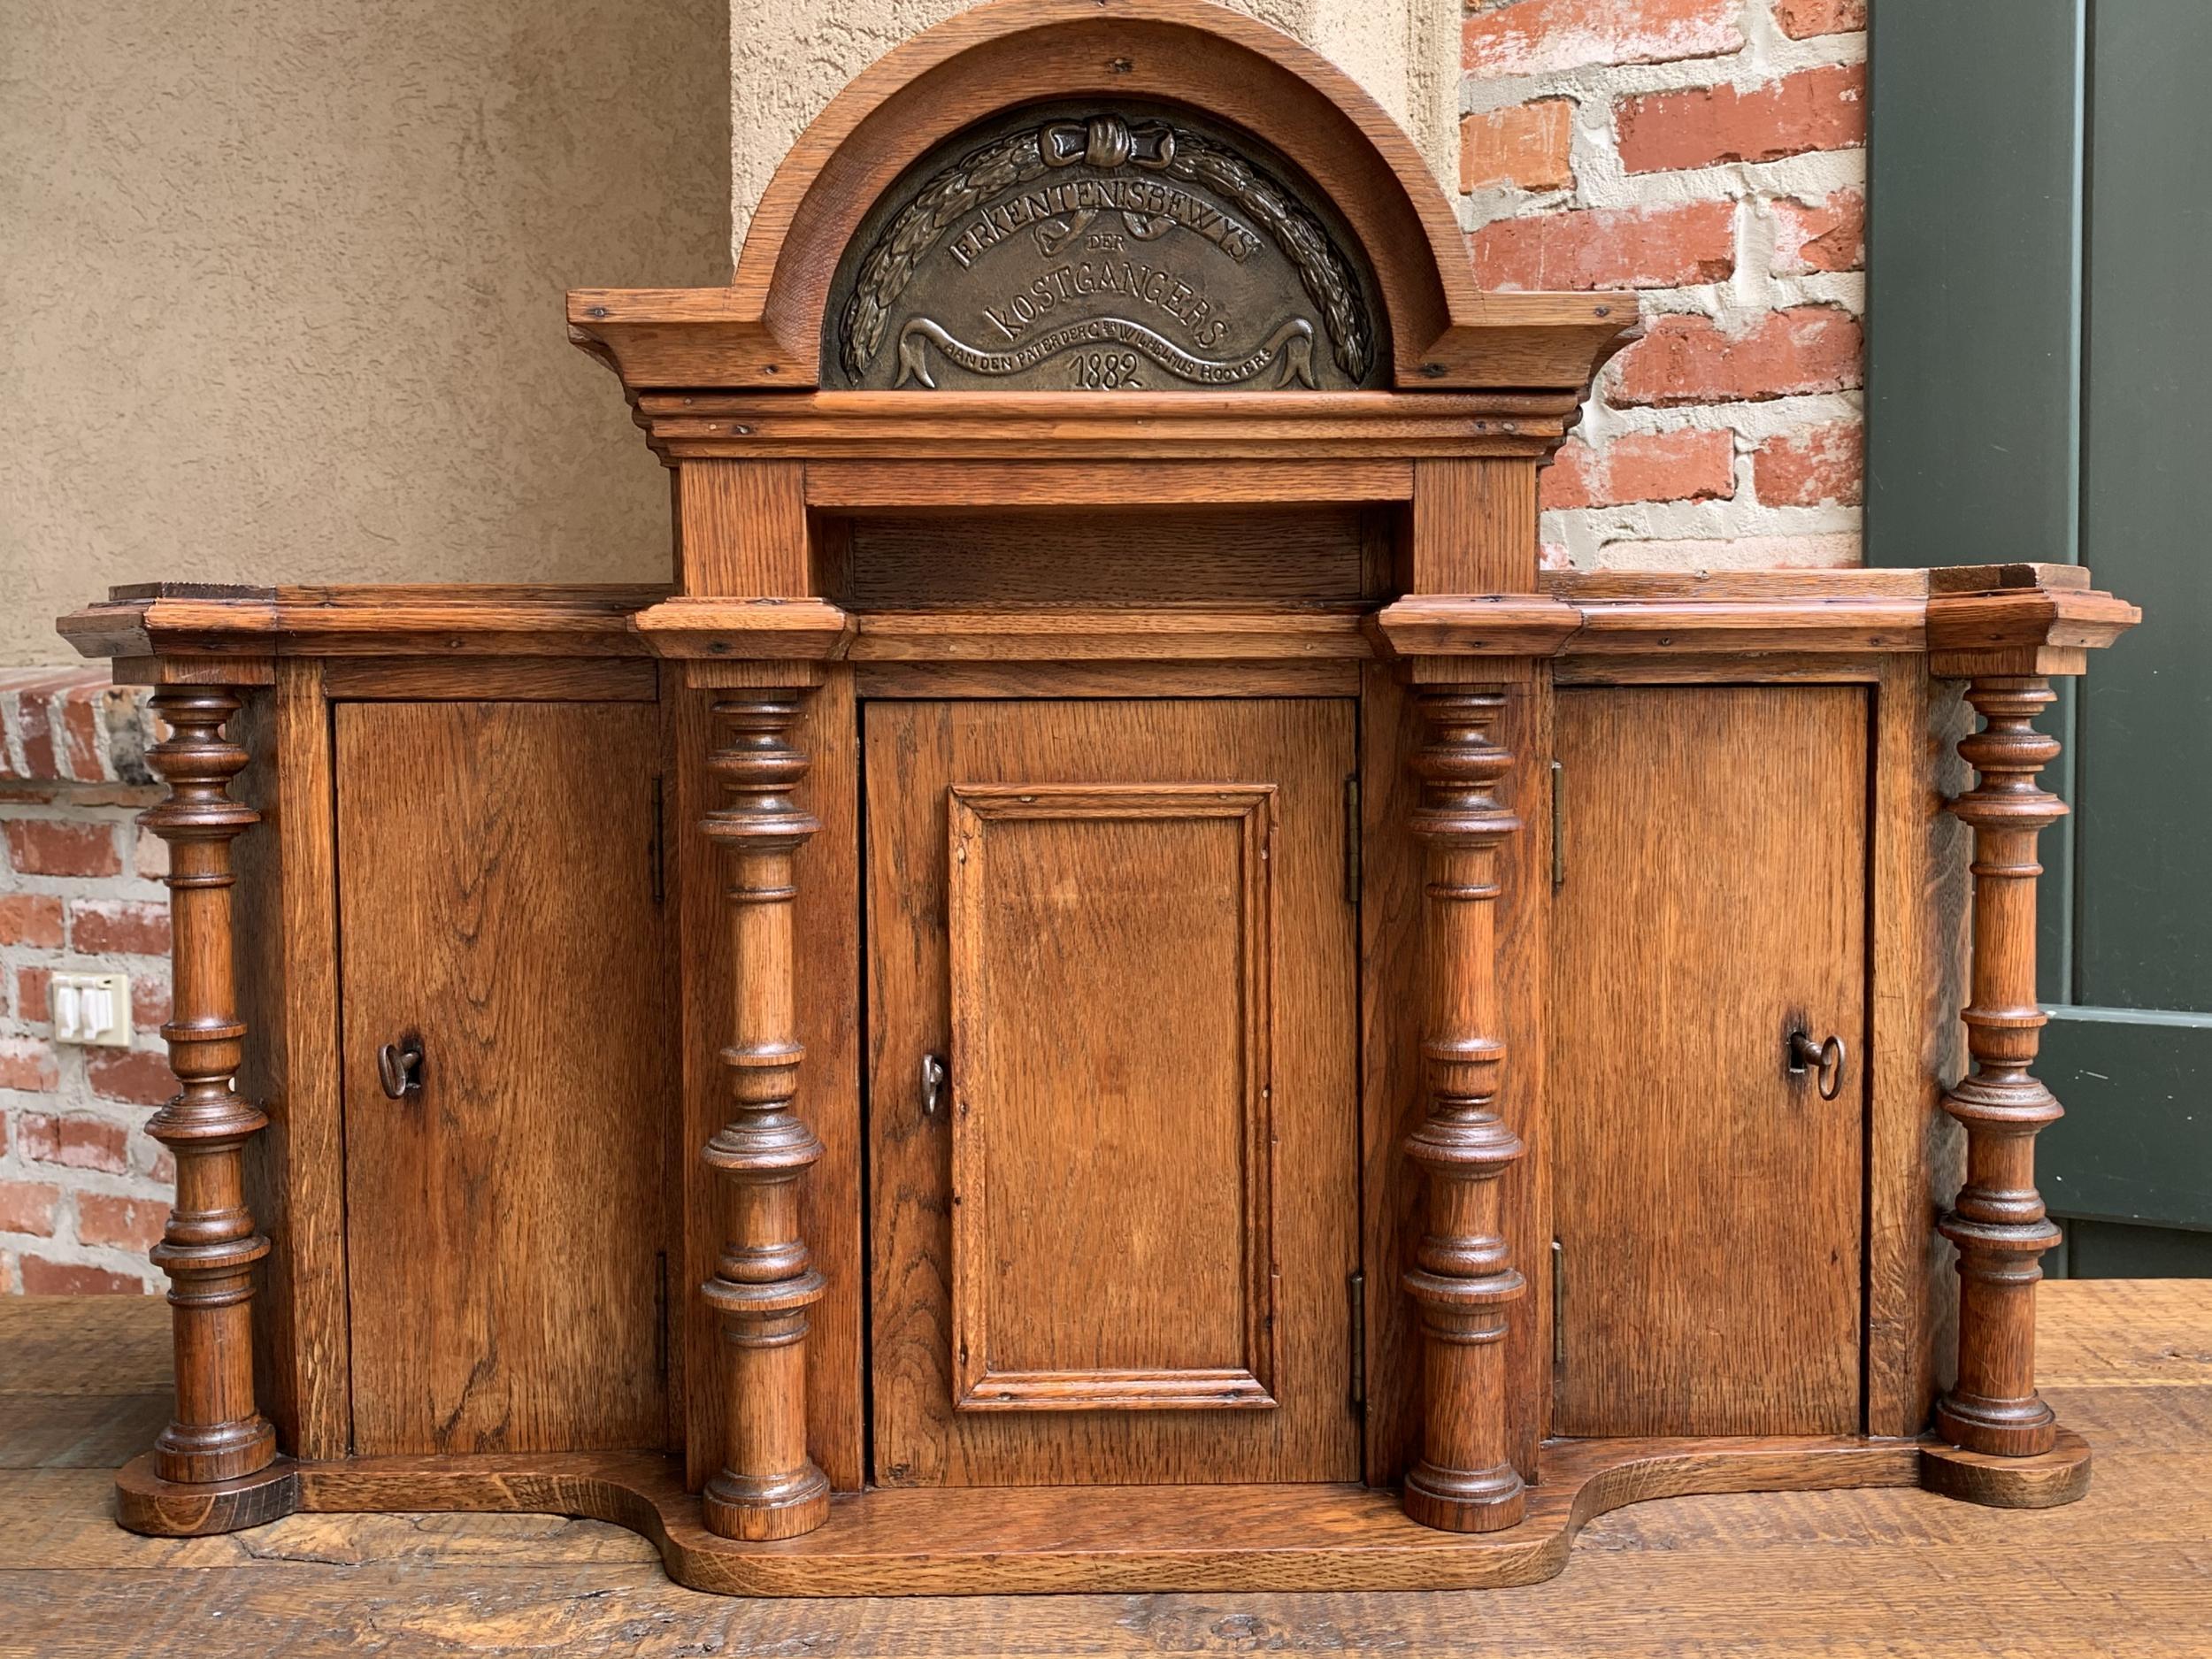 Belgian Antique European Reliquary Altar Cabinet Oak Box Liturgical 19th Century Belgium